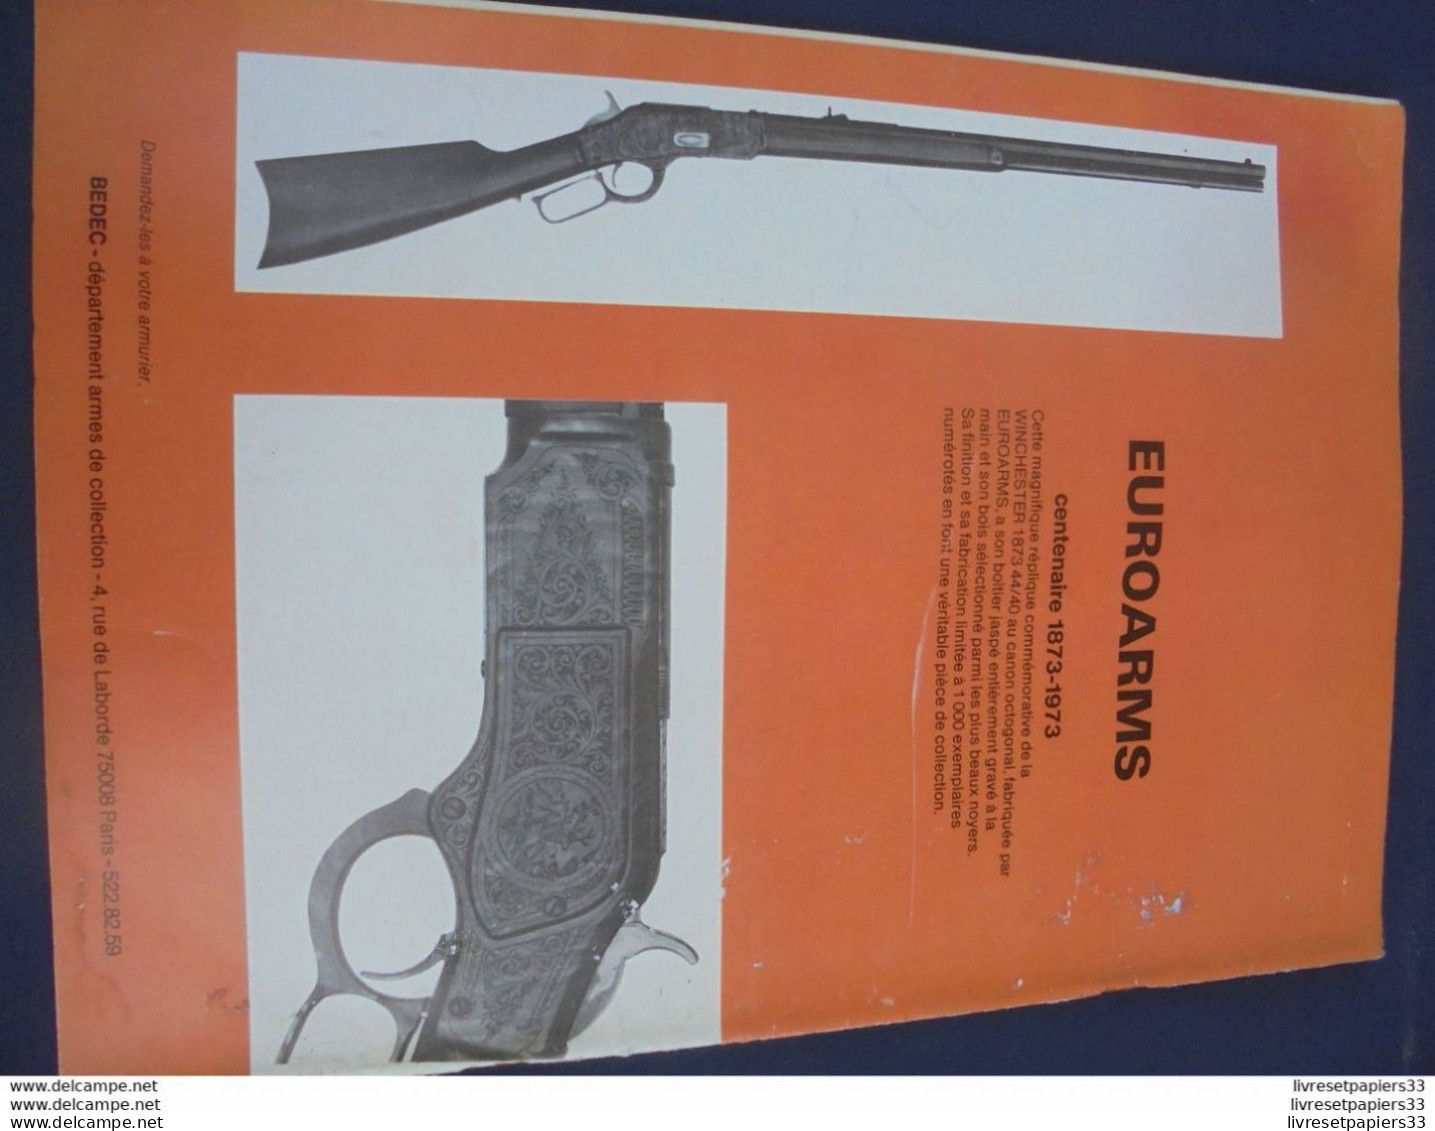 Gazette Des Armes. La Poudre Noire N°13 FEVRIER 1974 - Armi